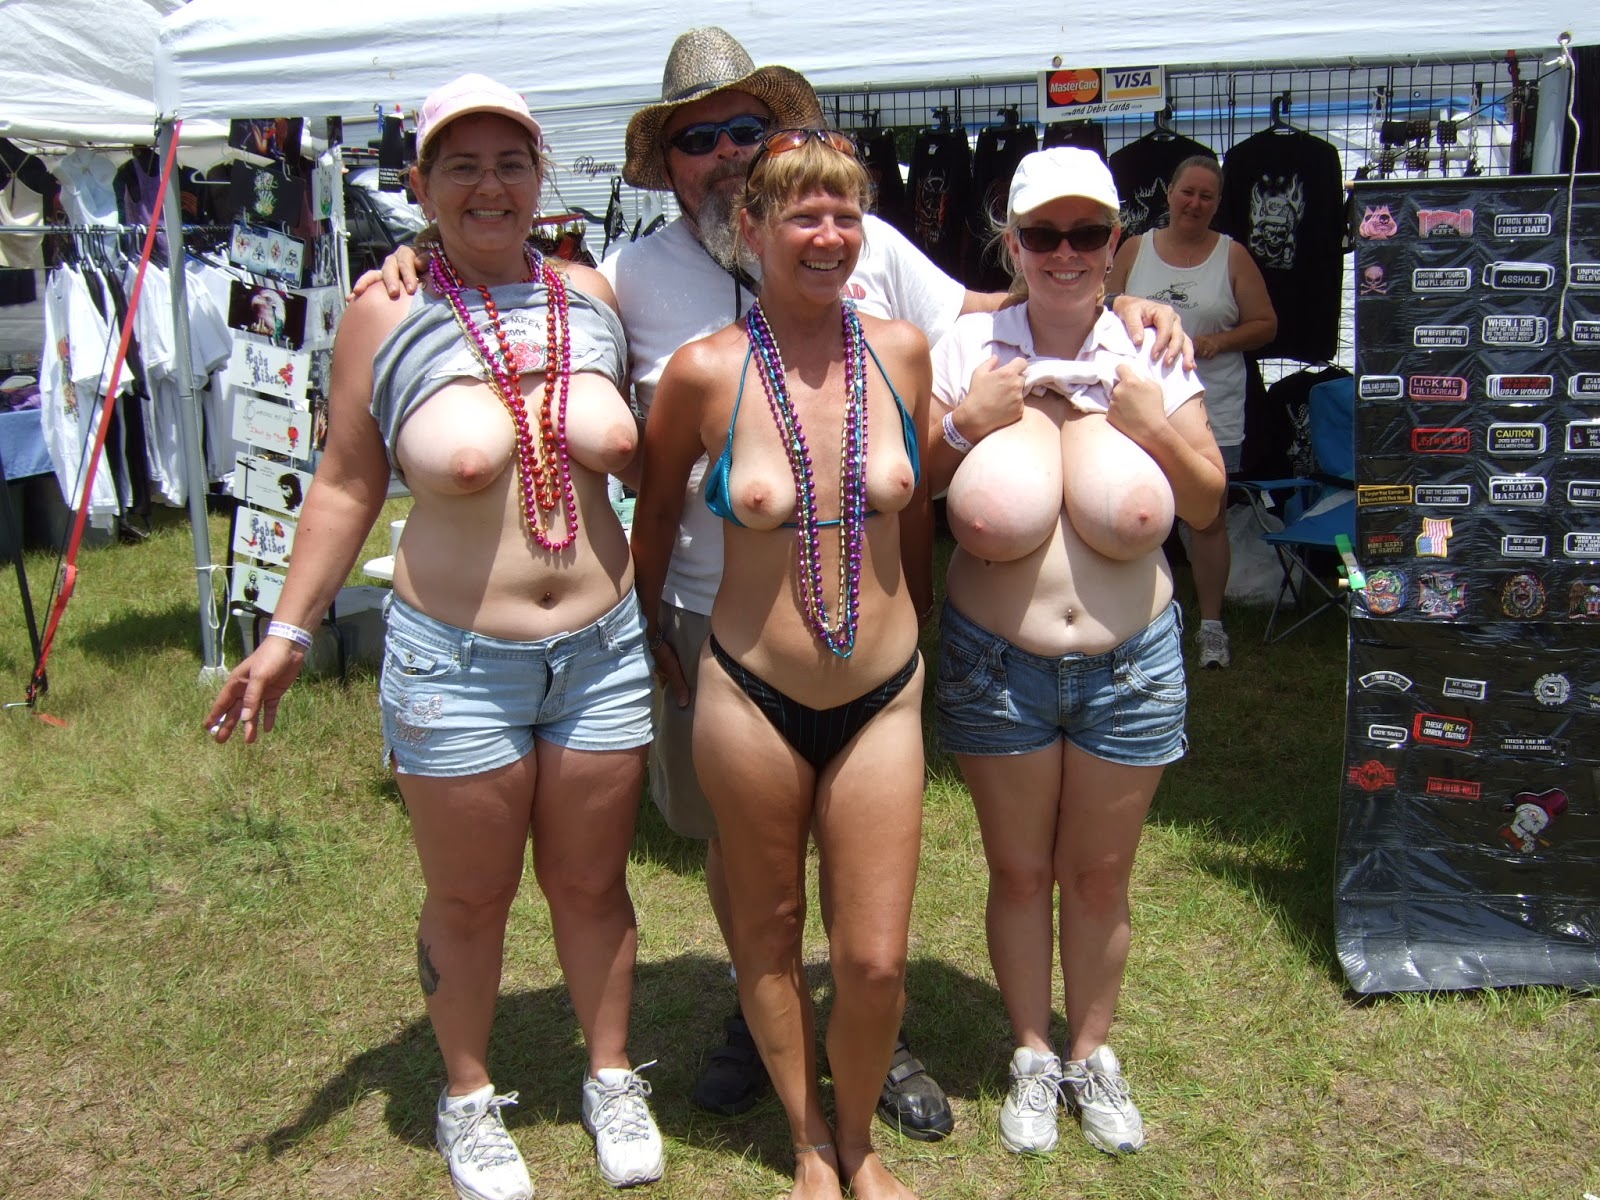 Public Teen Flashing Women Flashing Naked Tits Public Big Titties Girls